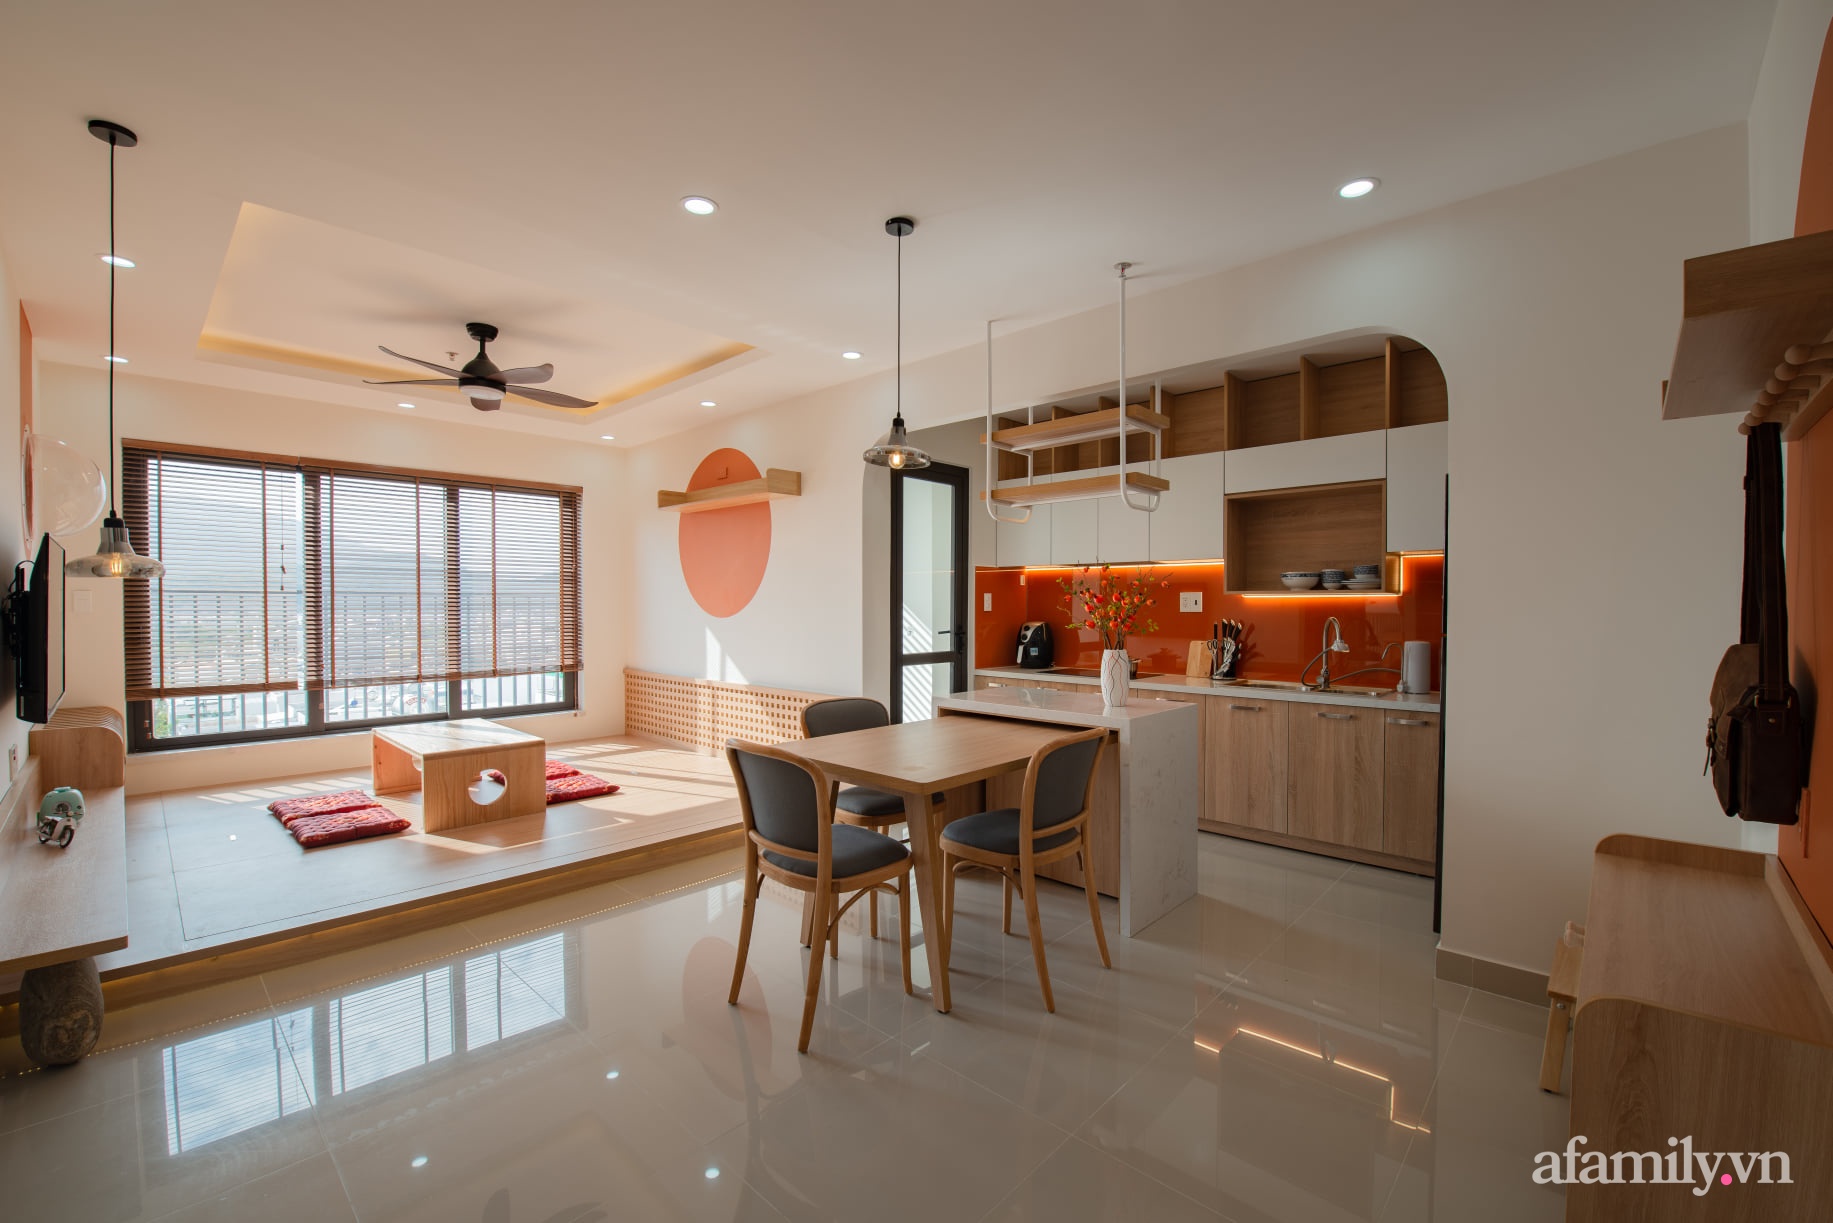 Căn hộ 78m² với tông cam đất ngọt ngào cùng đường cong mềm mại mang hơi hướng phong cách Nhật ở Nha Trang - Ảnh 11.